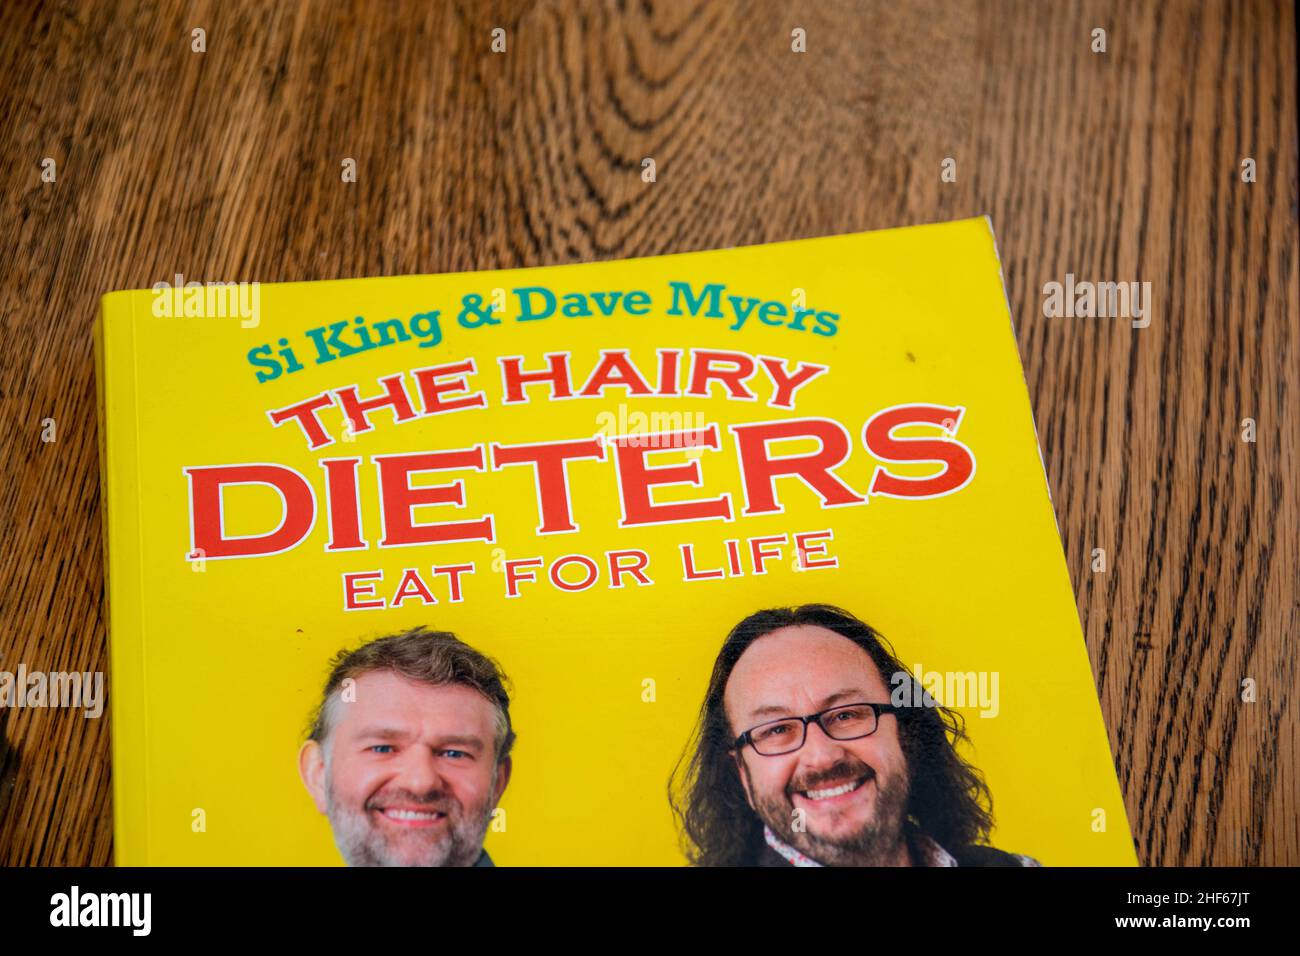 Durham, Reino Unido - 20 de noviembre de 2020: Si King y David Myers Hairy Dieters famosos libro de cocina por The Hairy Bikers. Los chefs Celeb enseñan cómo cocinar comida verdadera, pero s Foto de stock